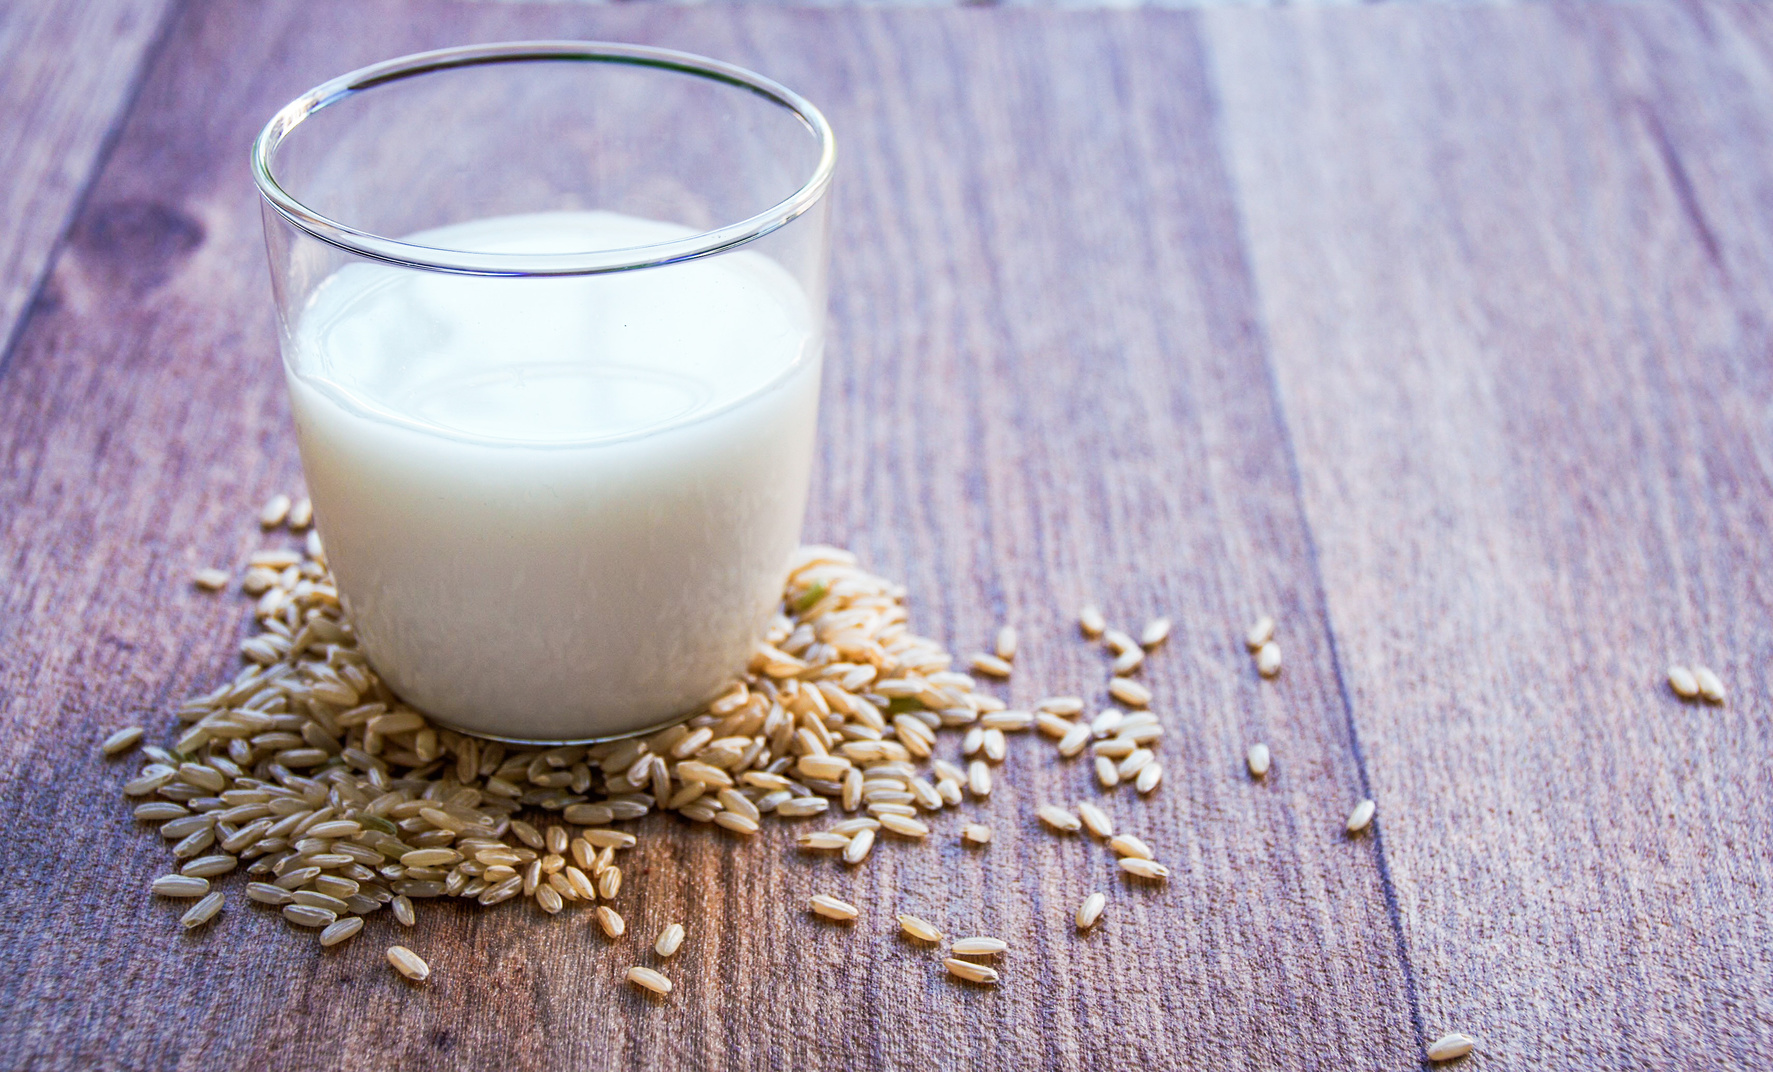 Latte vegetale: soia, riso, avena. Prezzi e ingredienti per scegliere